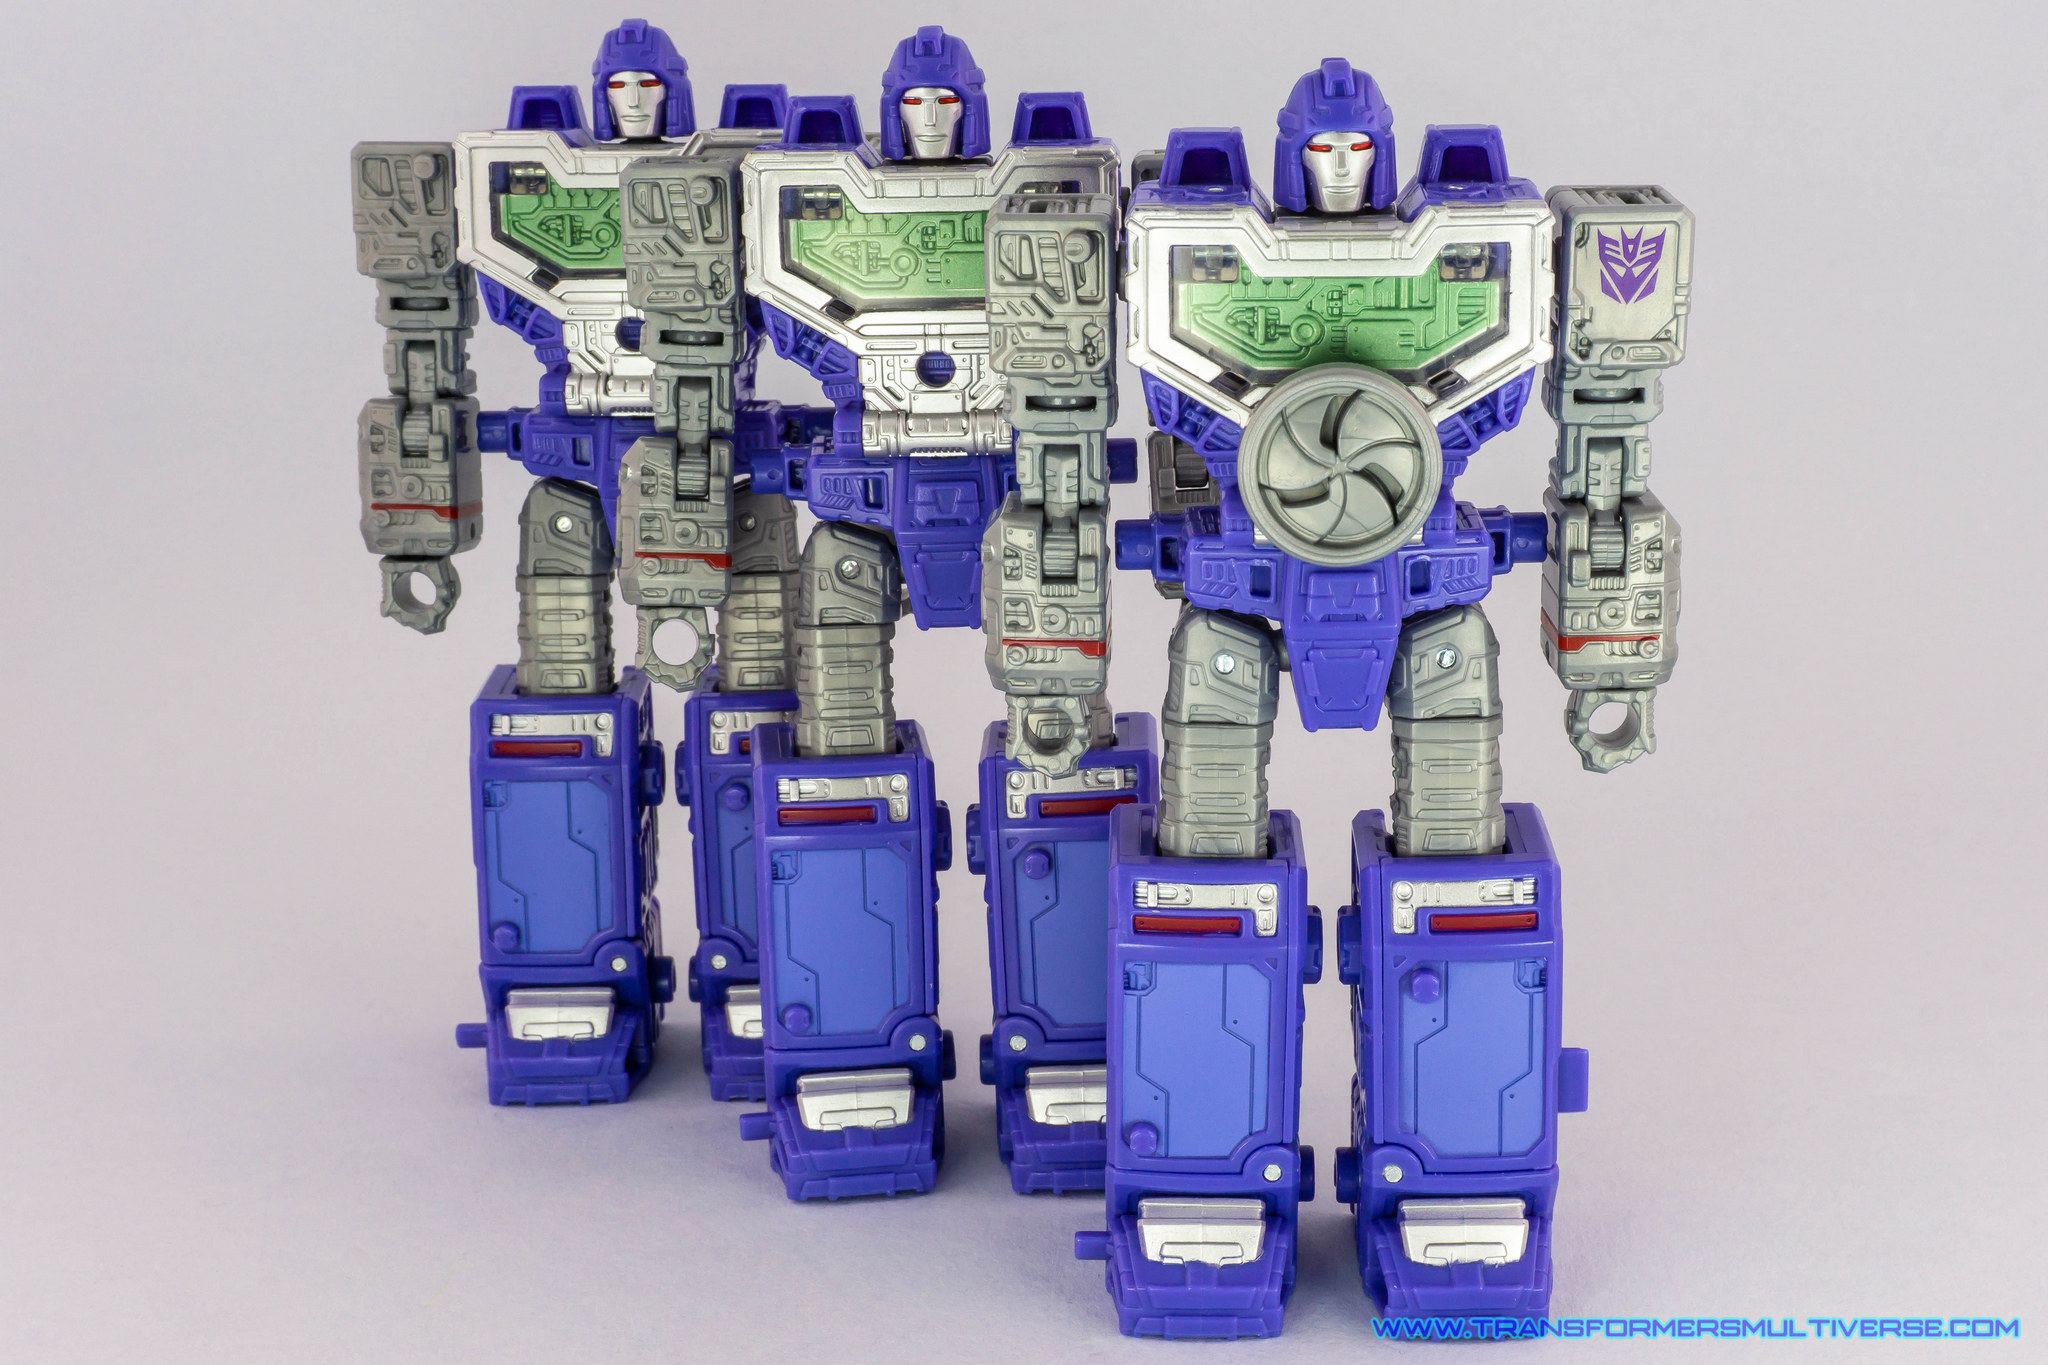 Transformers Siege Refraktor standing together in robot mode